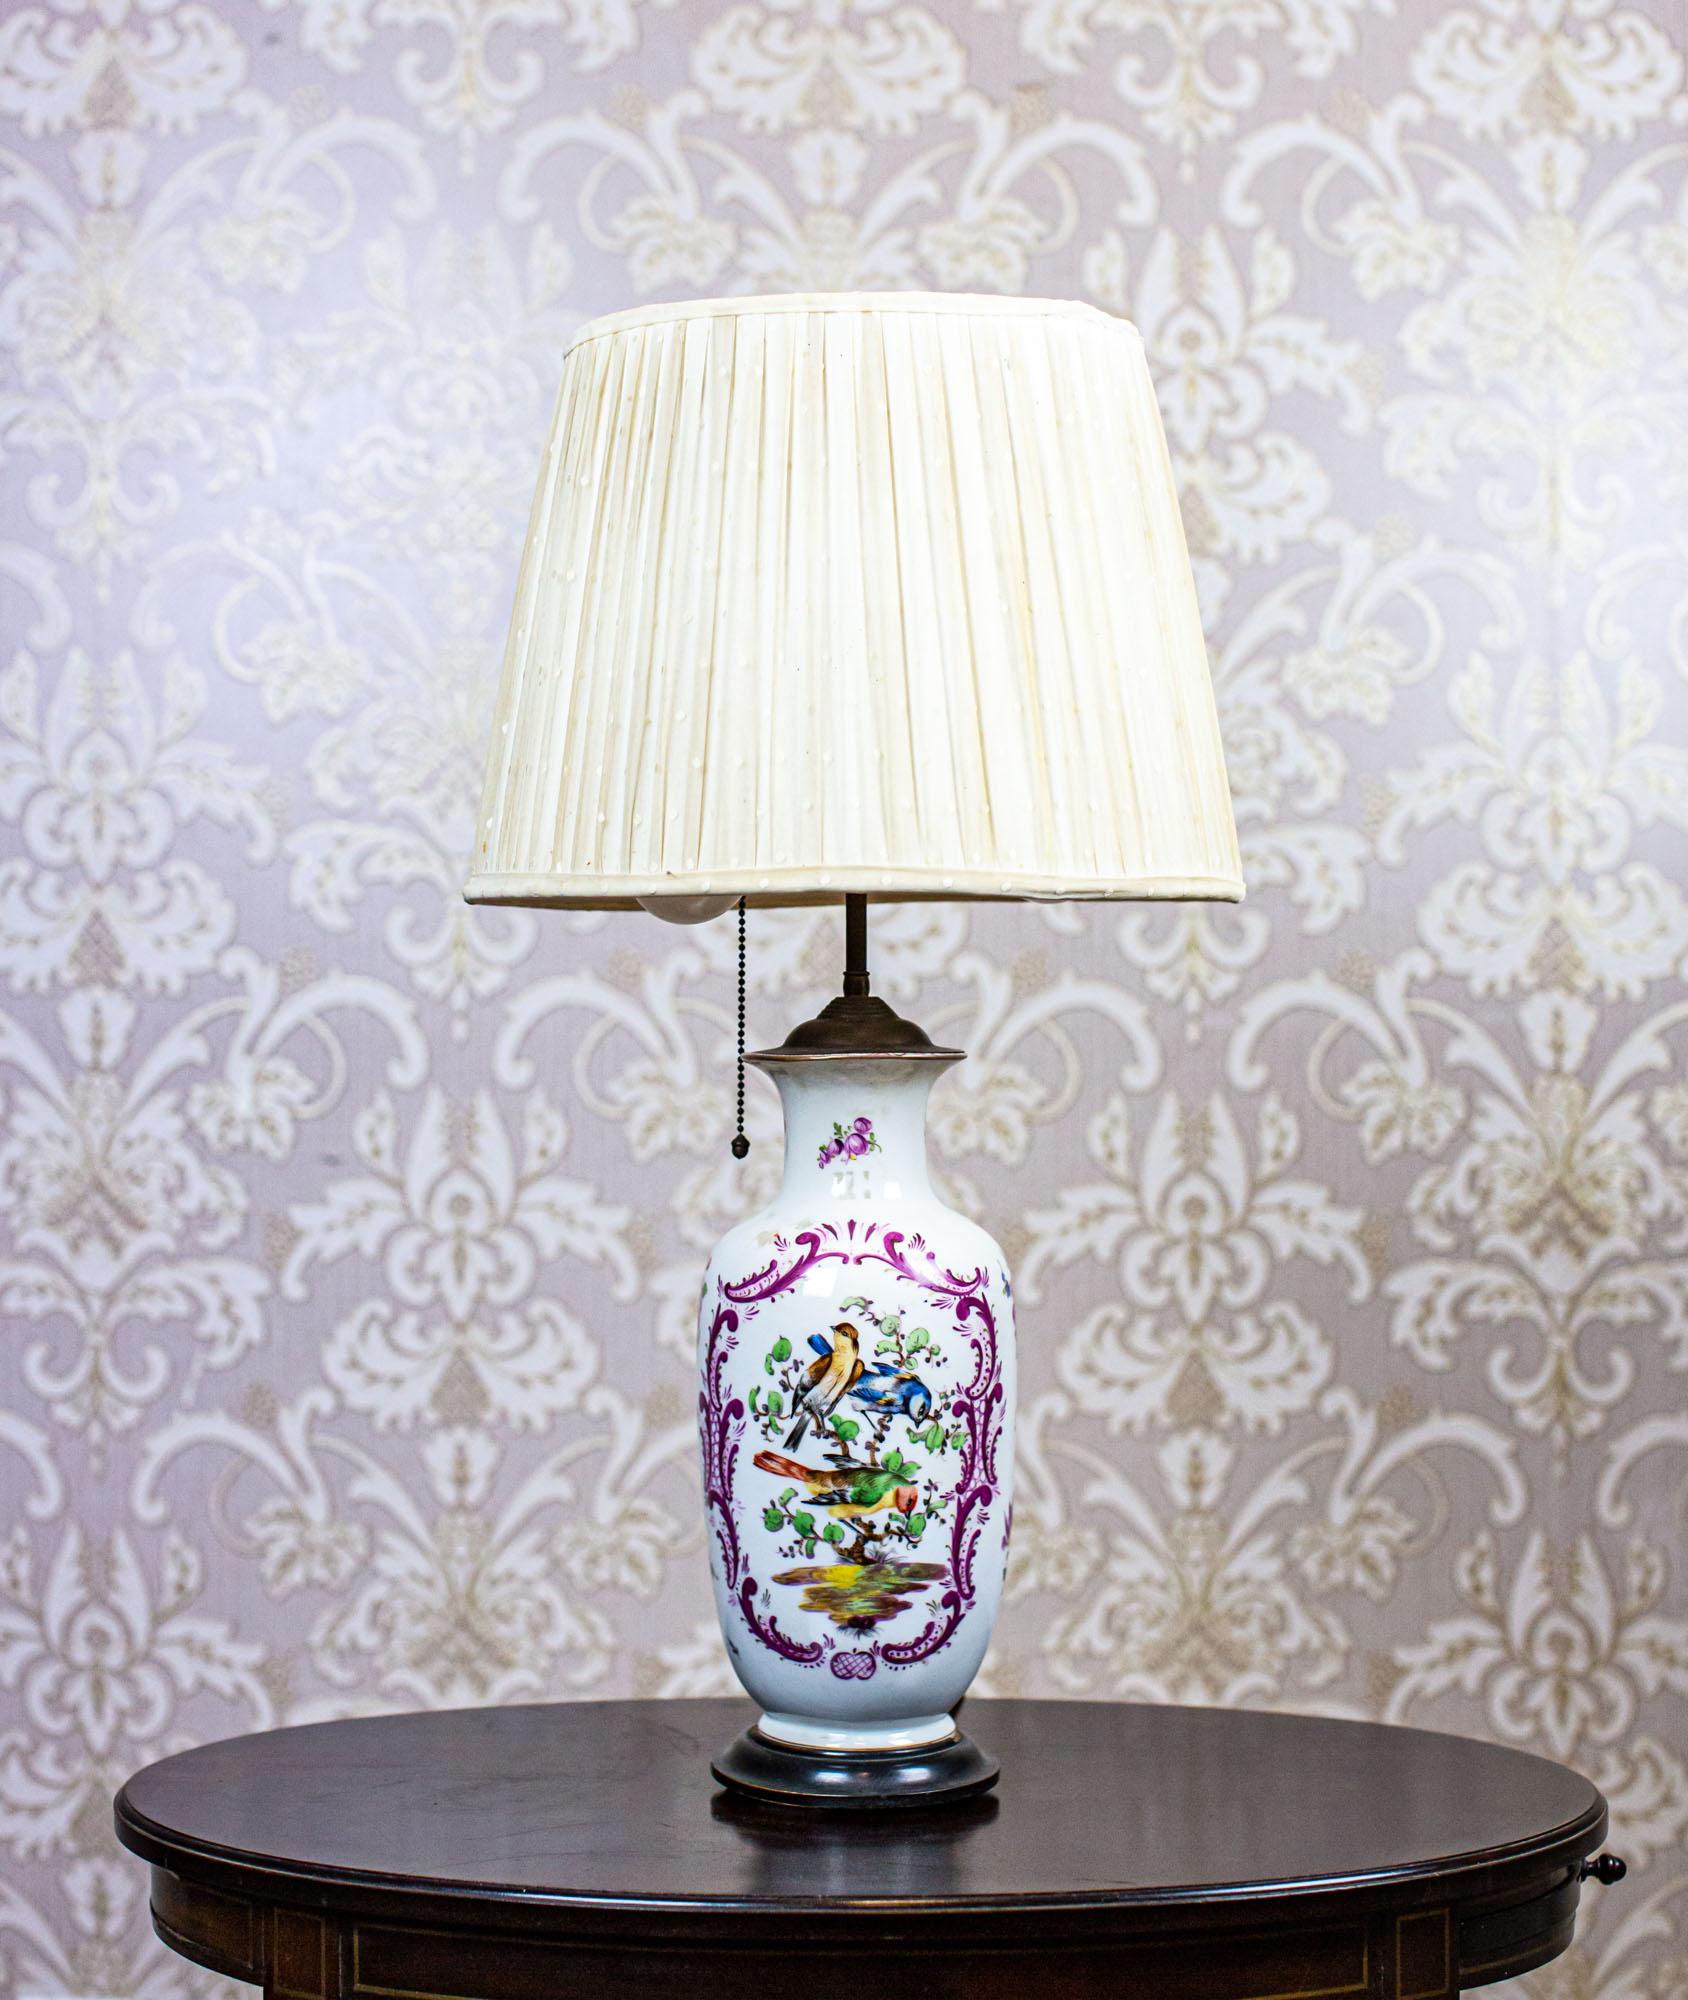 Lampe de table électrique du 20e siècle avec base en céramique décorative

Nous vous présentons une lampe de table électrique du milieu du 20e siècle. siècle.
La base en céramique est décorée de motifs représentant la nature. L'abat-jour est en